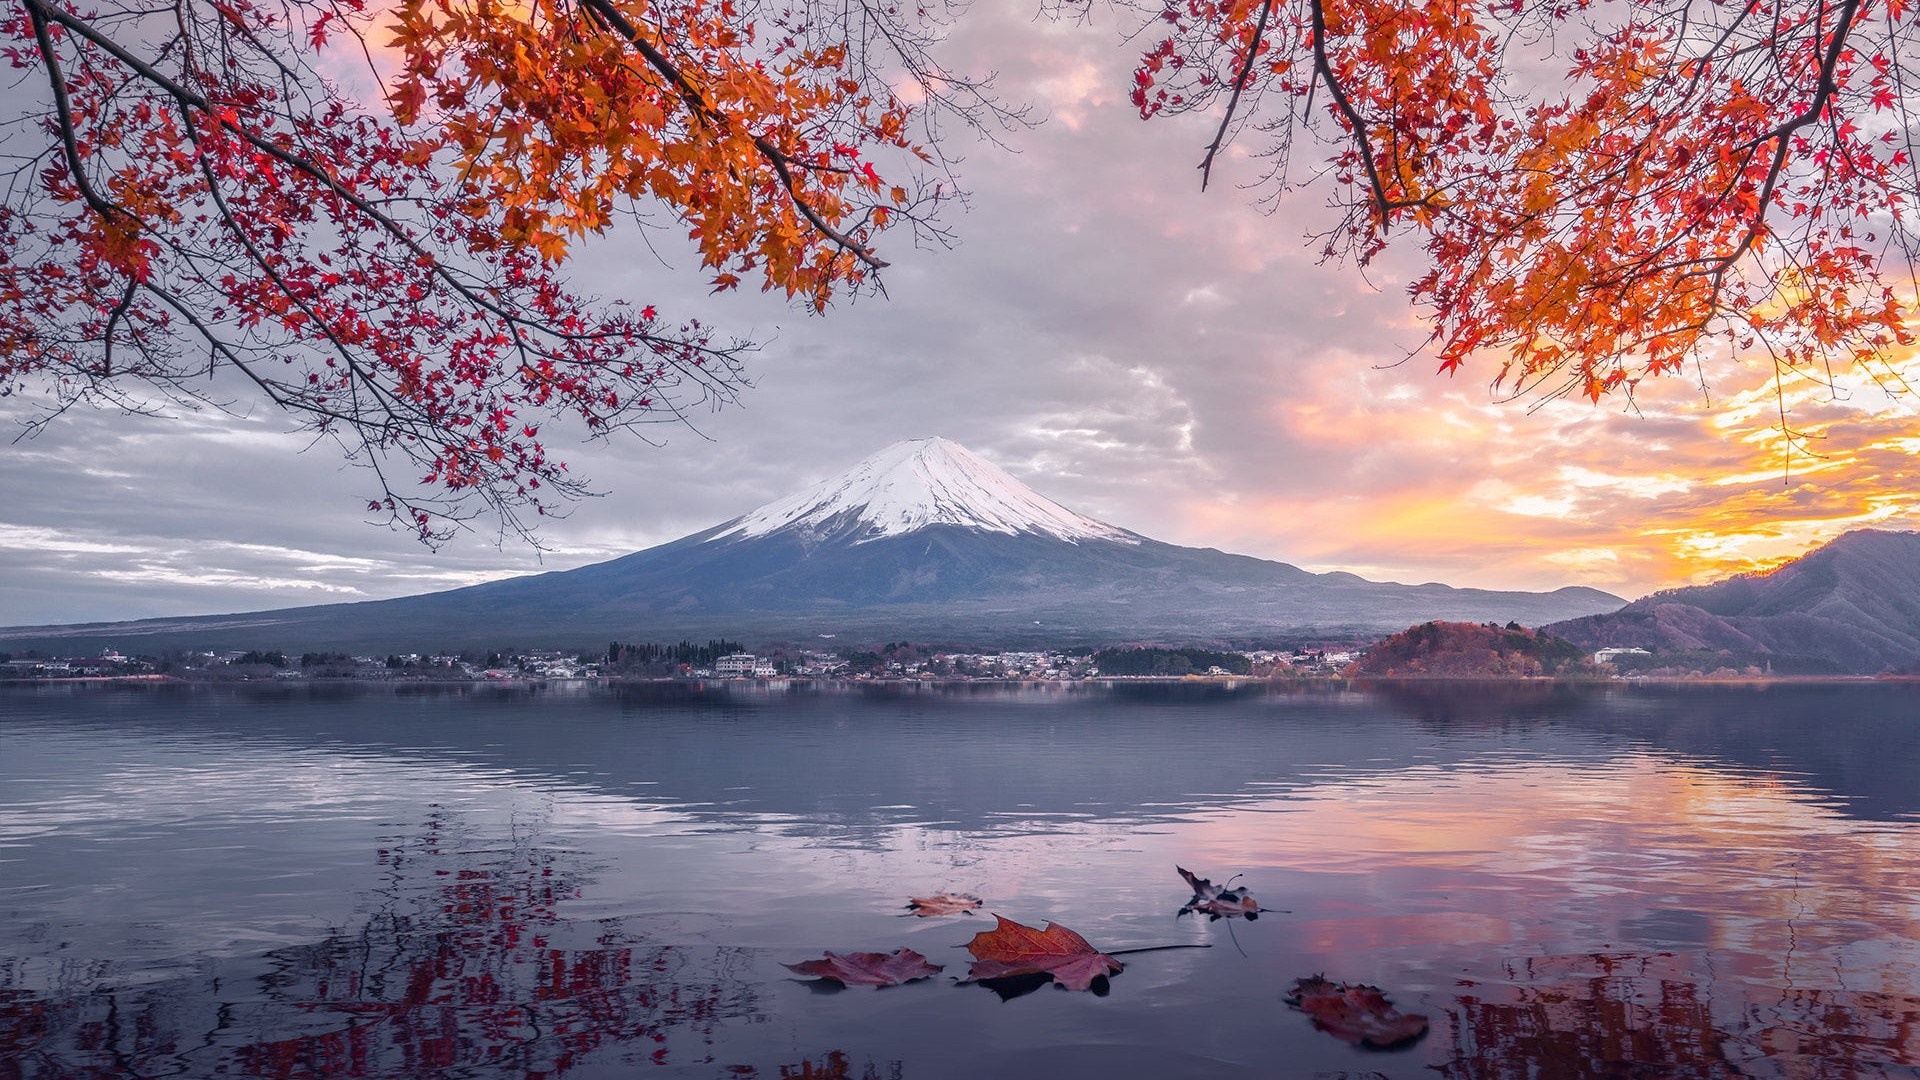 Download 8K iPhone Mount Fuji Wallpaper